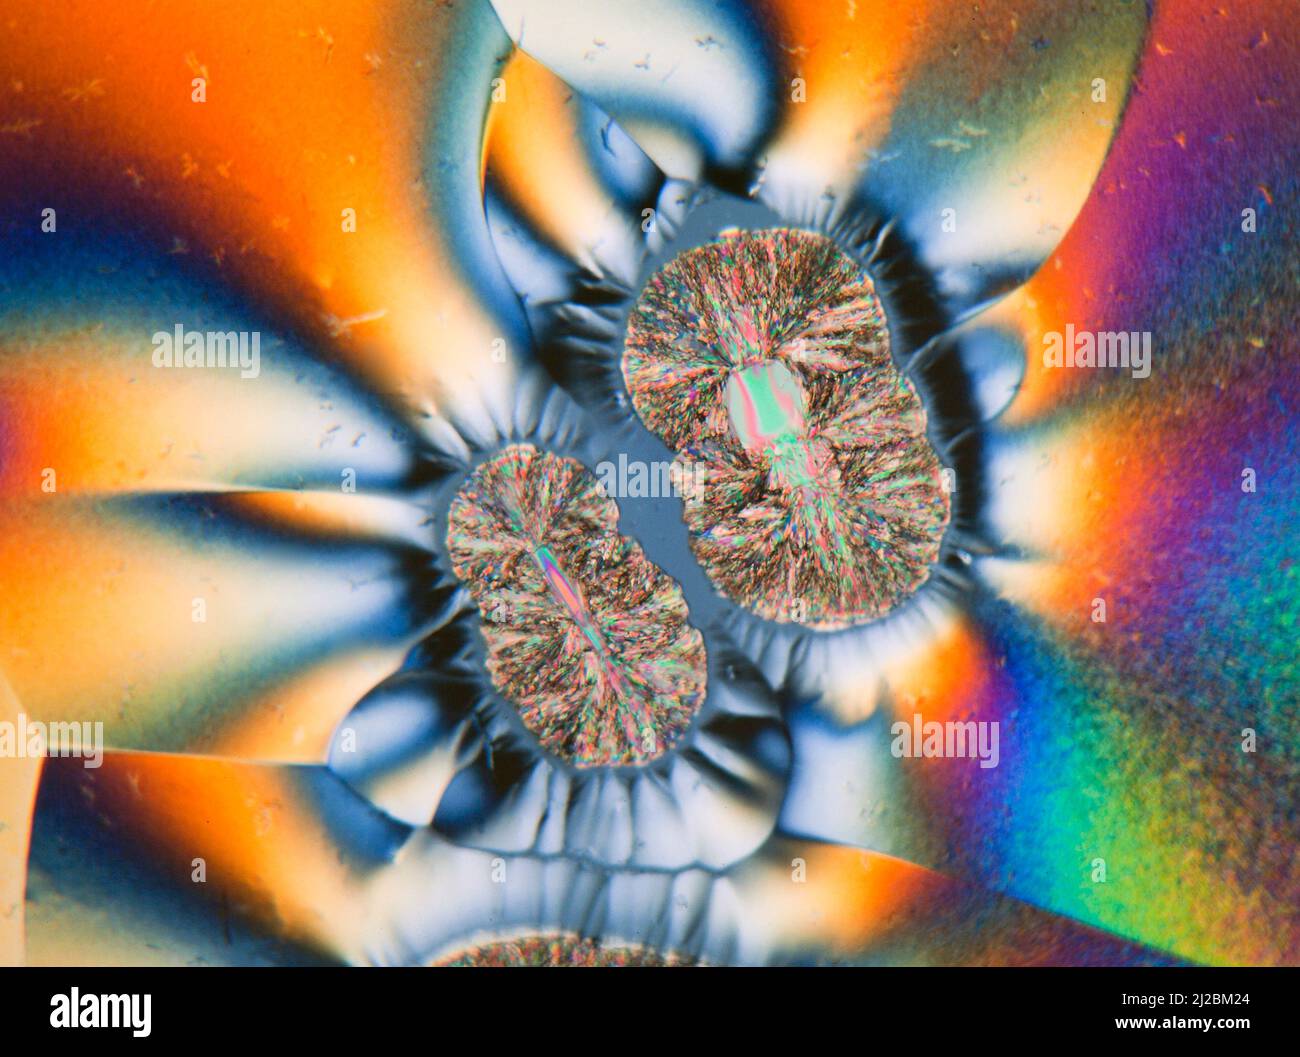 Muestra cristalizada de vitamina C, espectacular portaobjetos de polarización cruzada con placa de retardo añadida, fotomicrografía Foto de stock